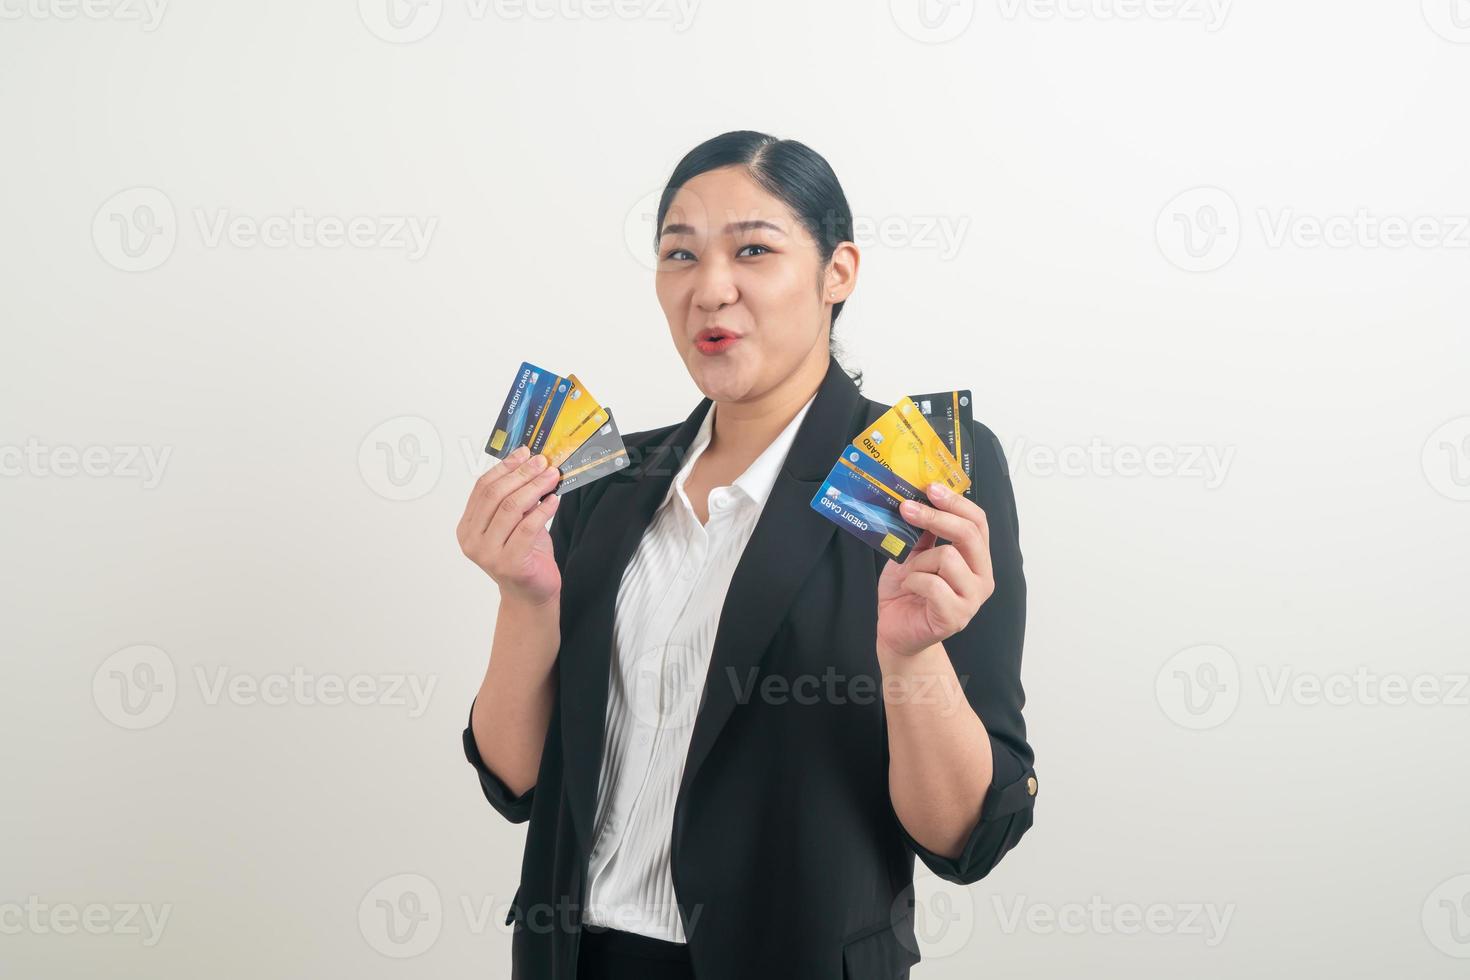 femme asiatique, tenue, carte crédit, à, fond blanc photo